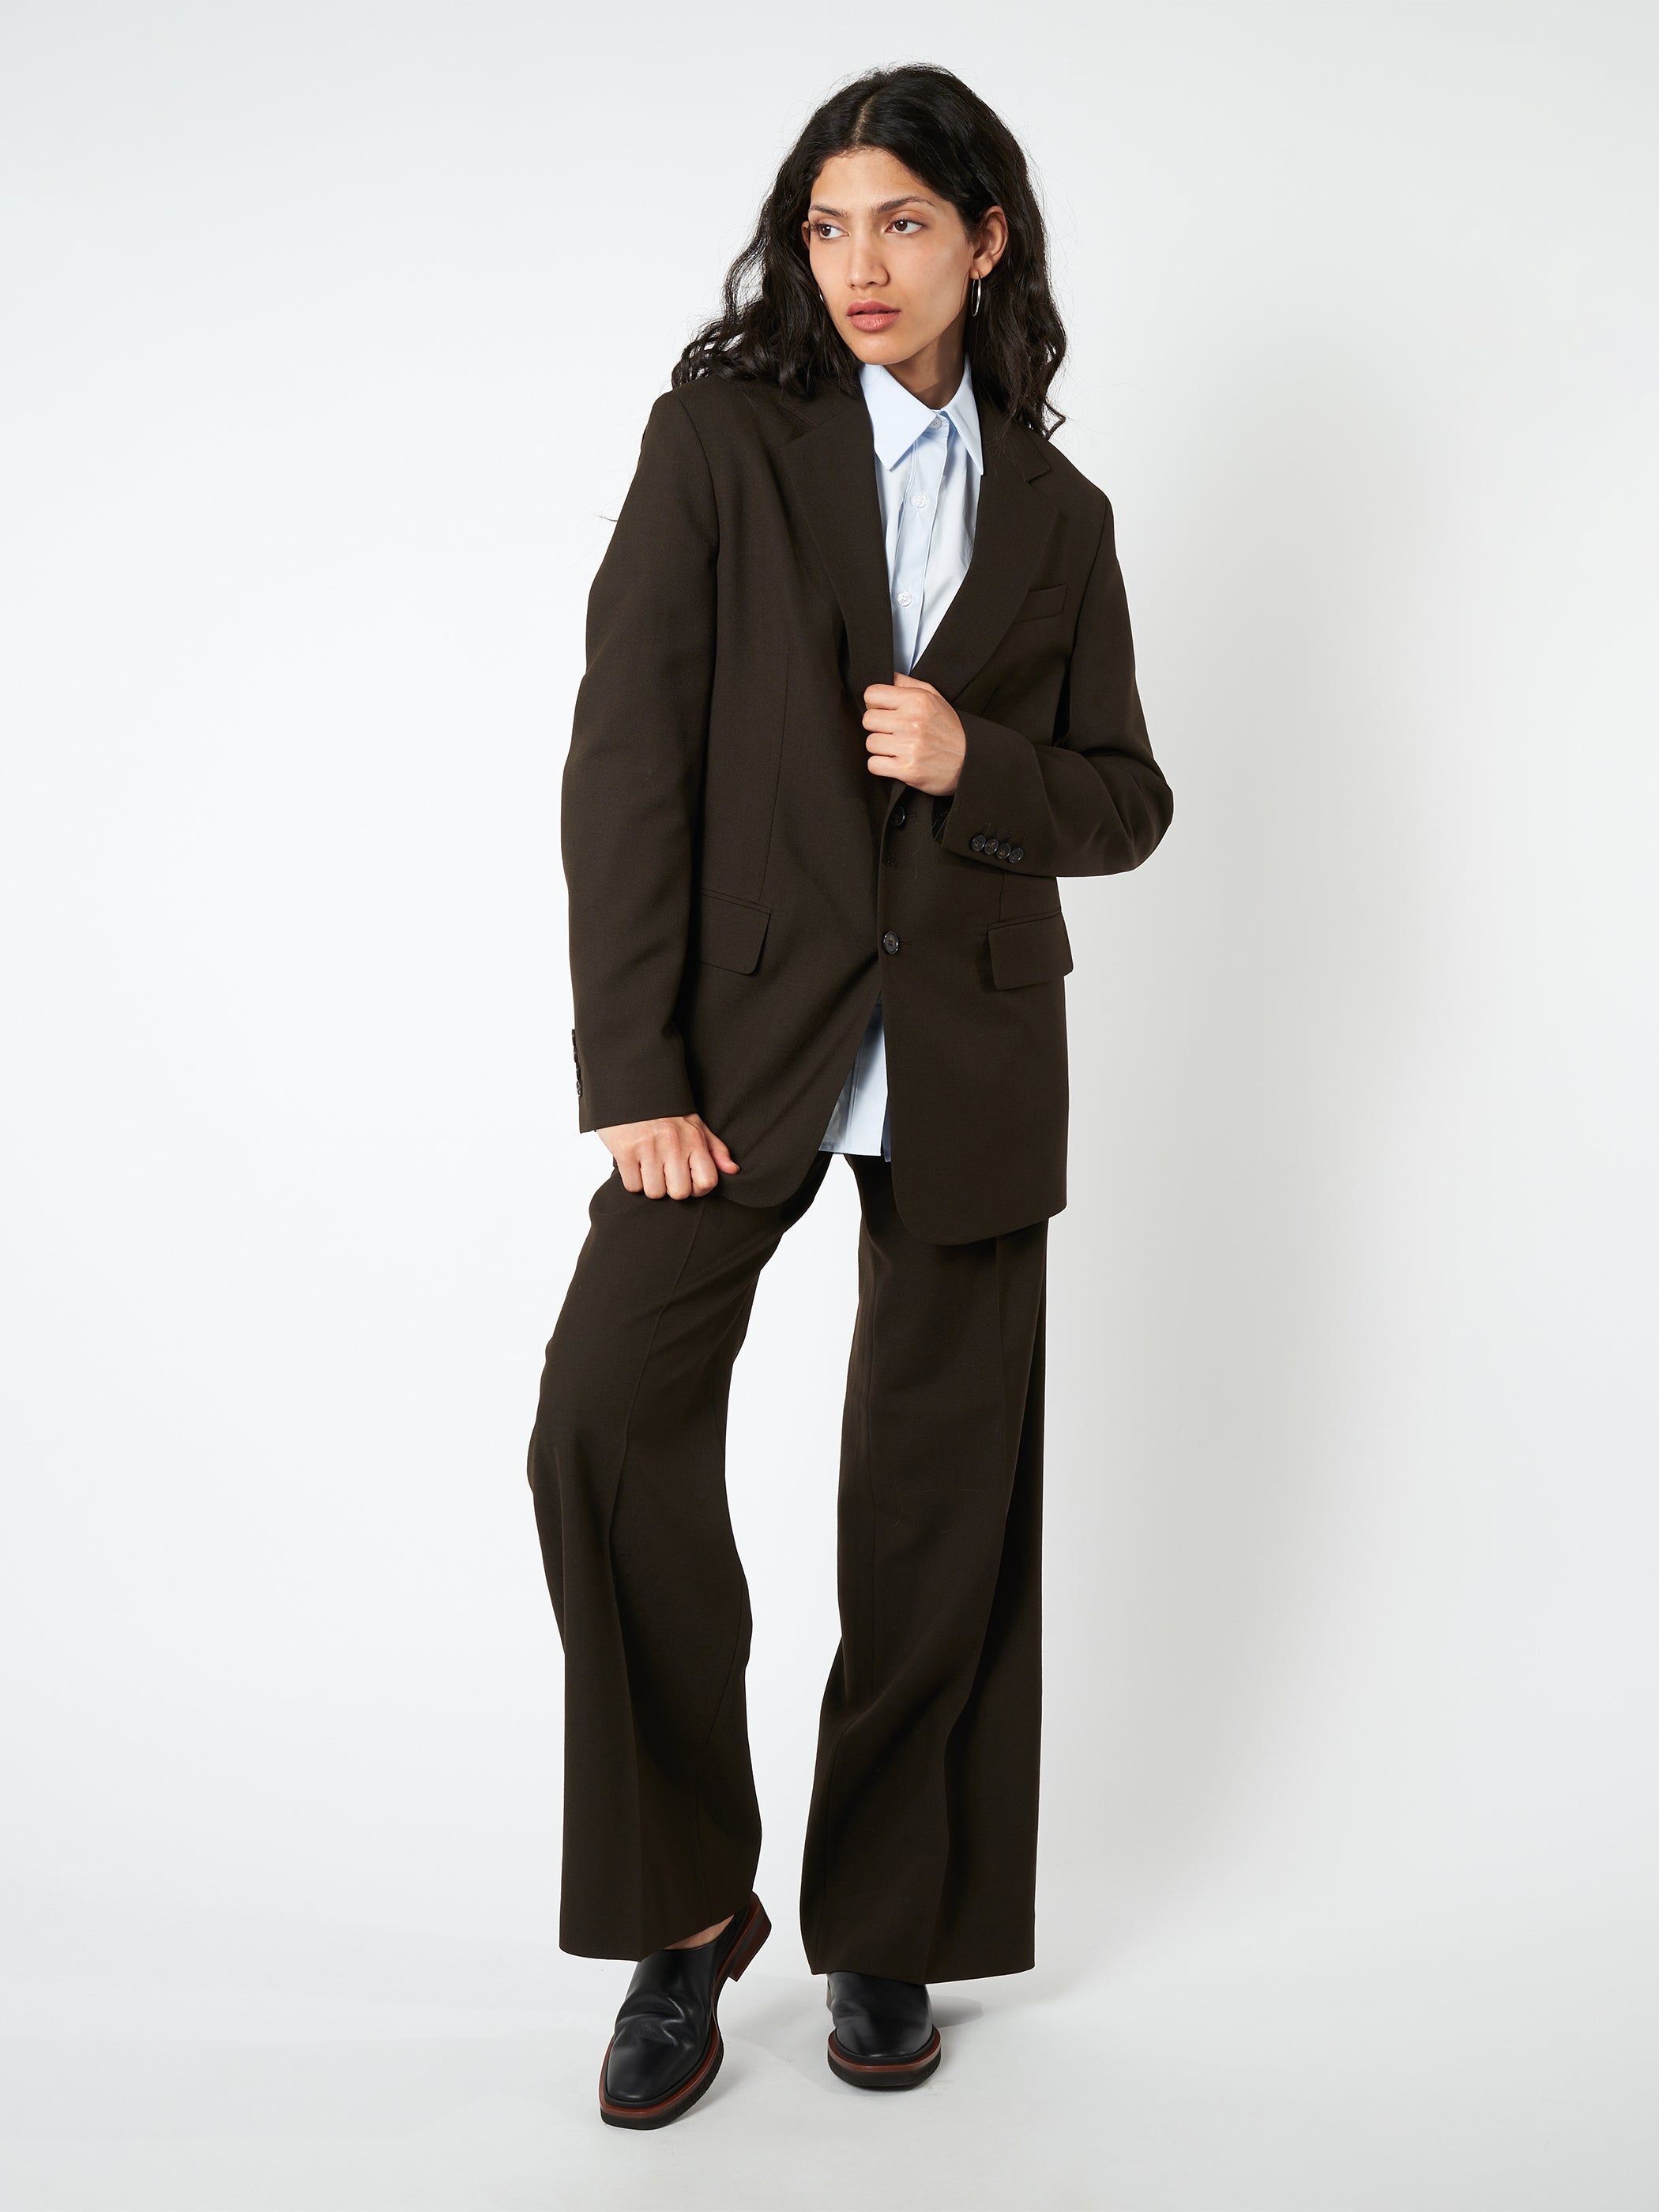 Stretch wool fitted blazer, Filippa K, Women's Blazers